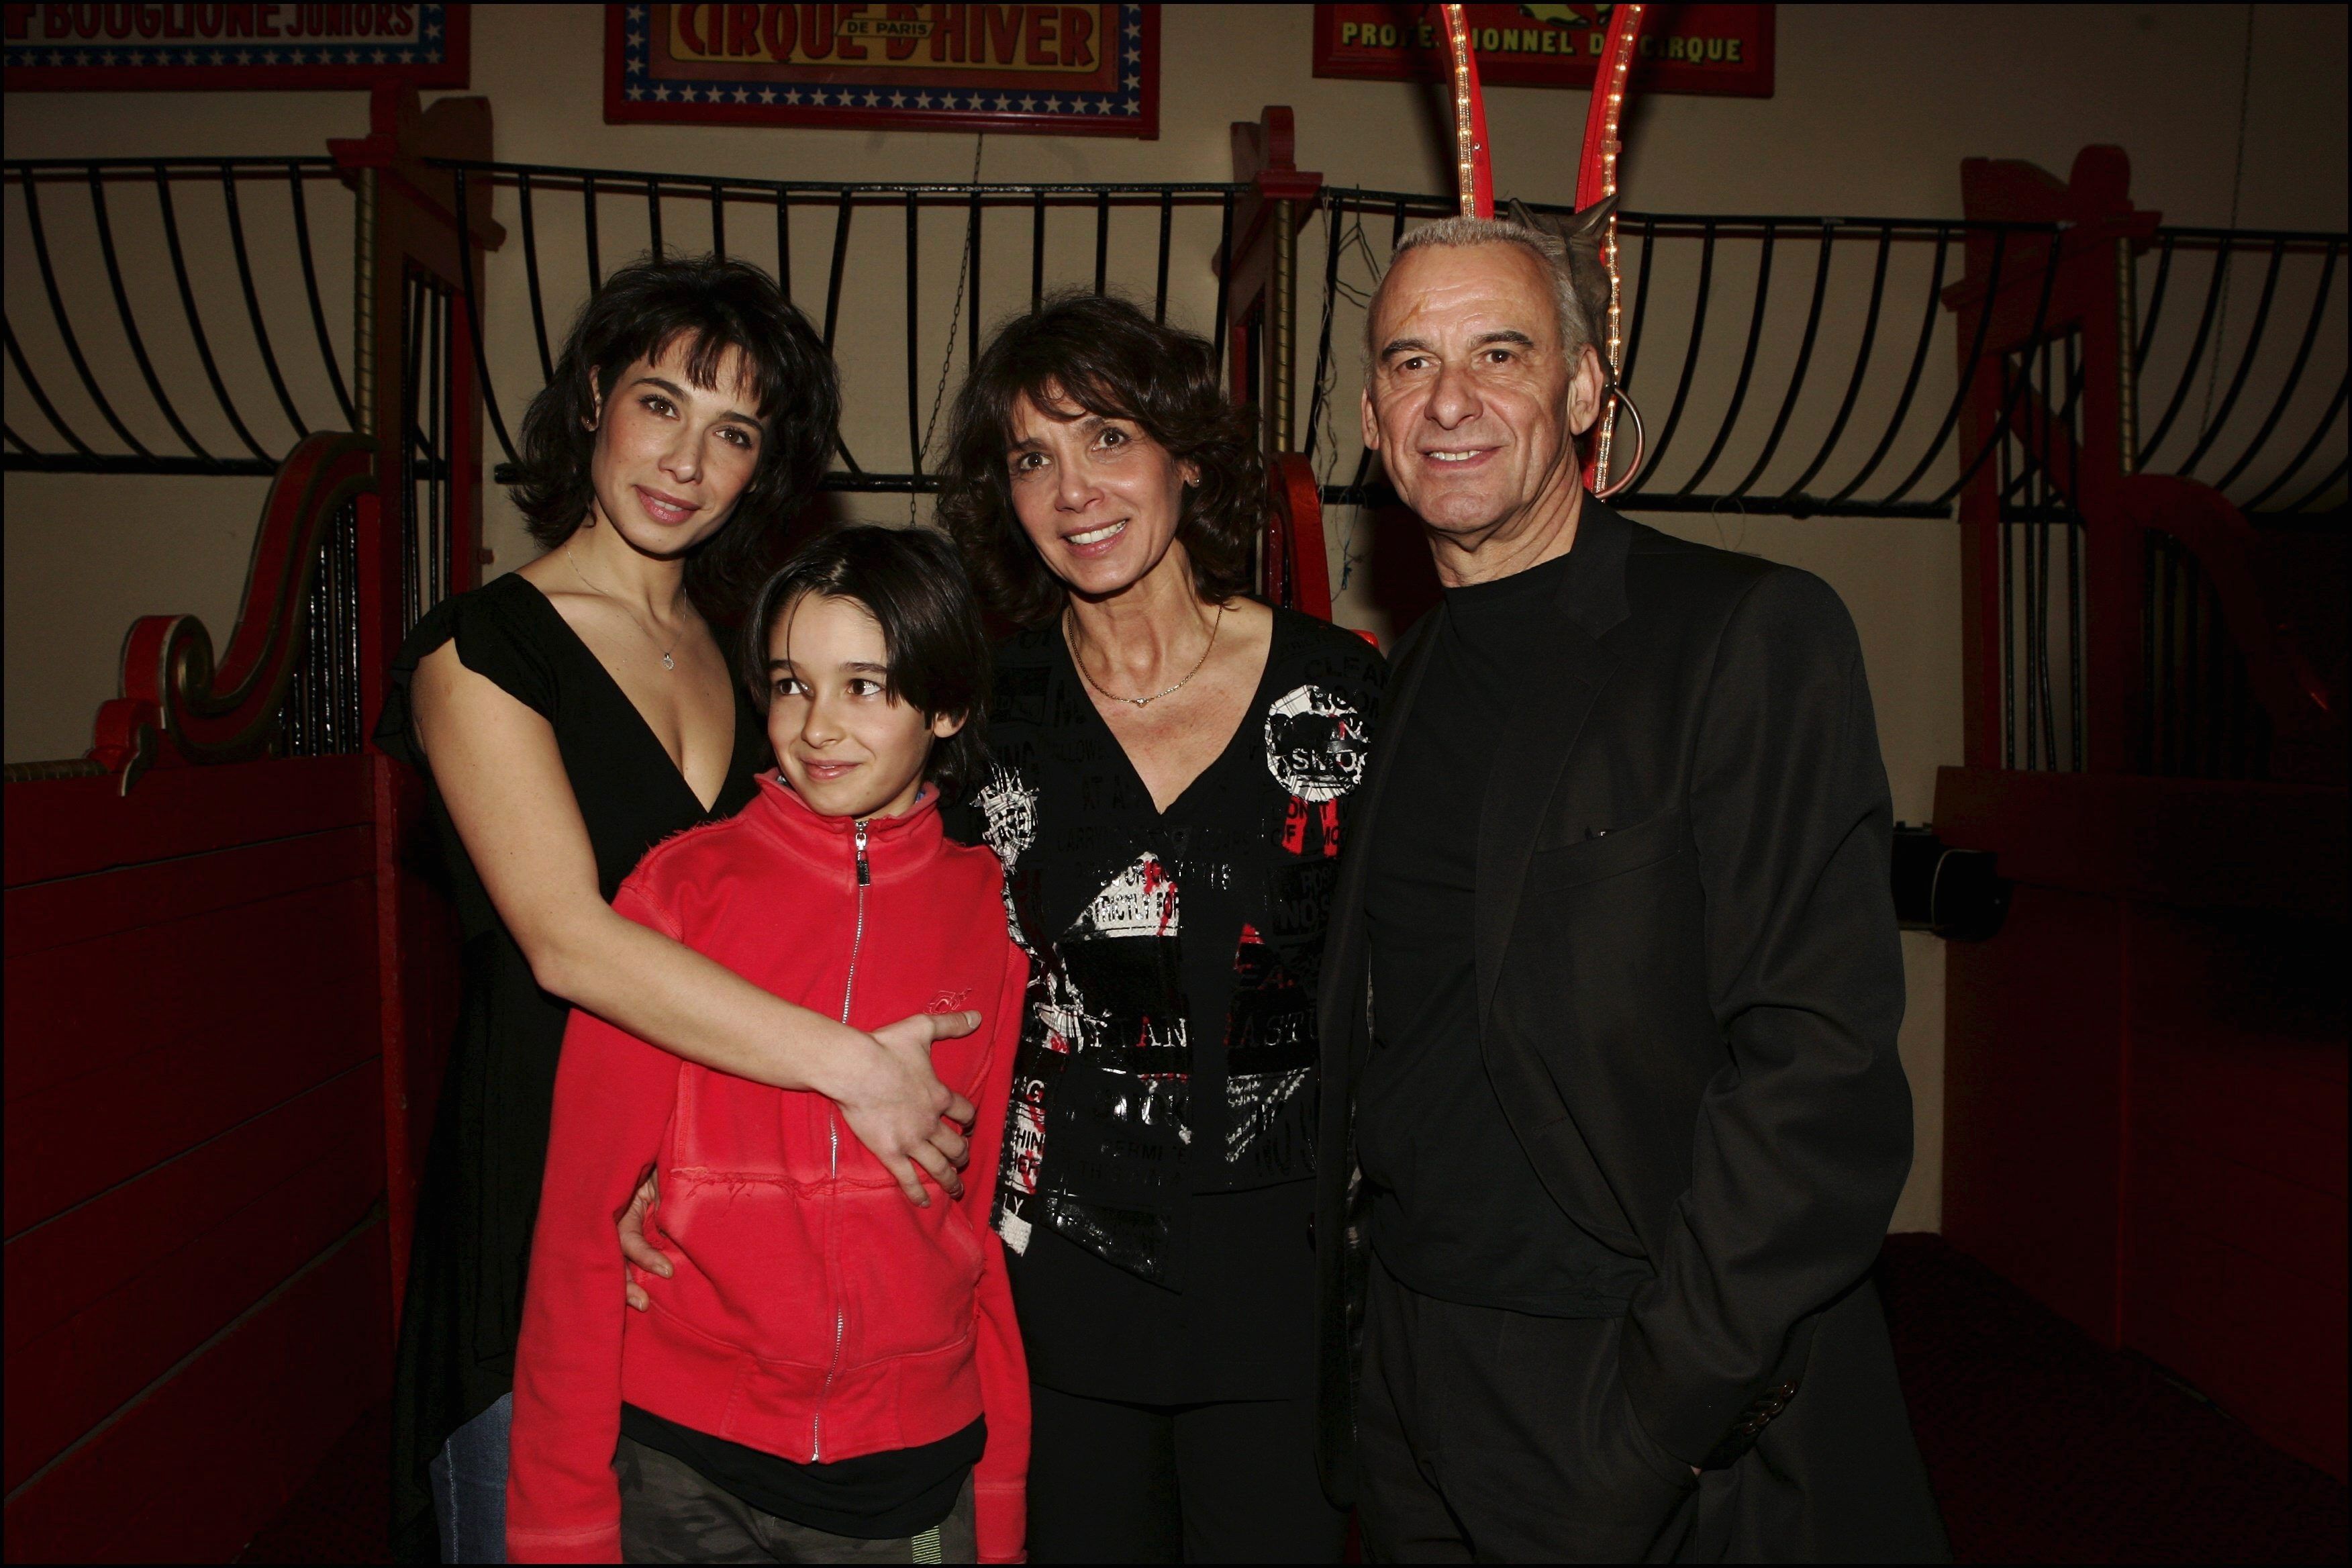  Michel et Stéphanie Fugain avec leurs enfants Marie et Alexis, le 8 Février 2005 à Paris, France. | Photo : Getty Images